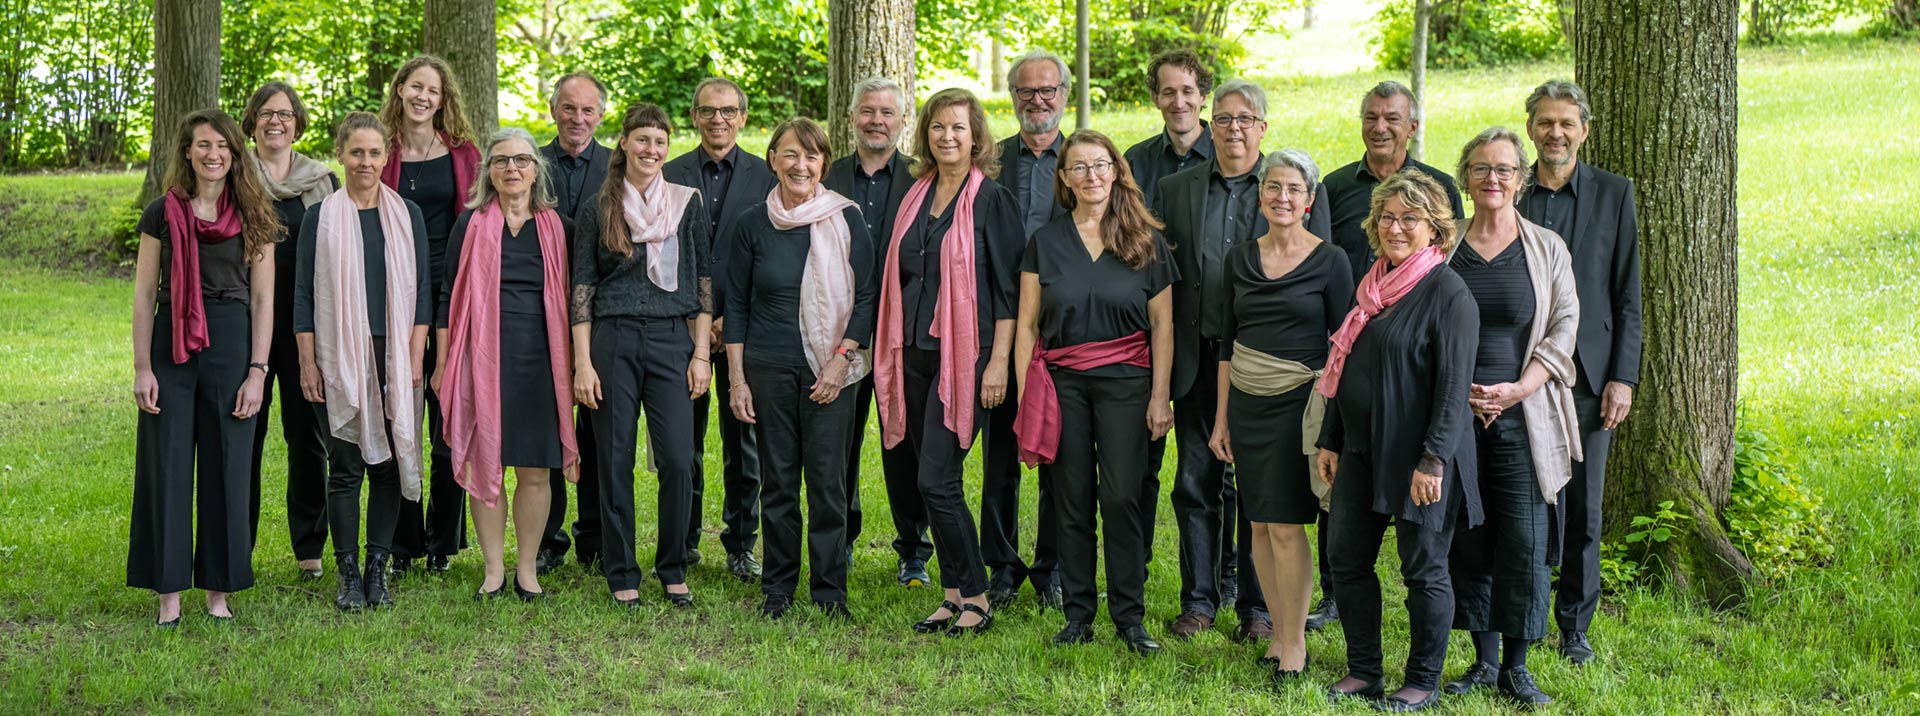 Sängerinnen und Sänger des Kammerchor Salzburg